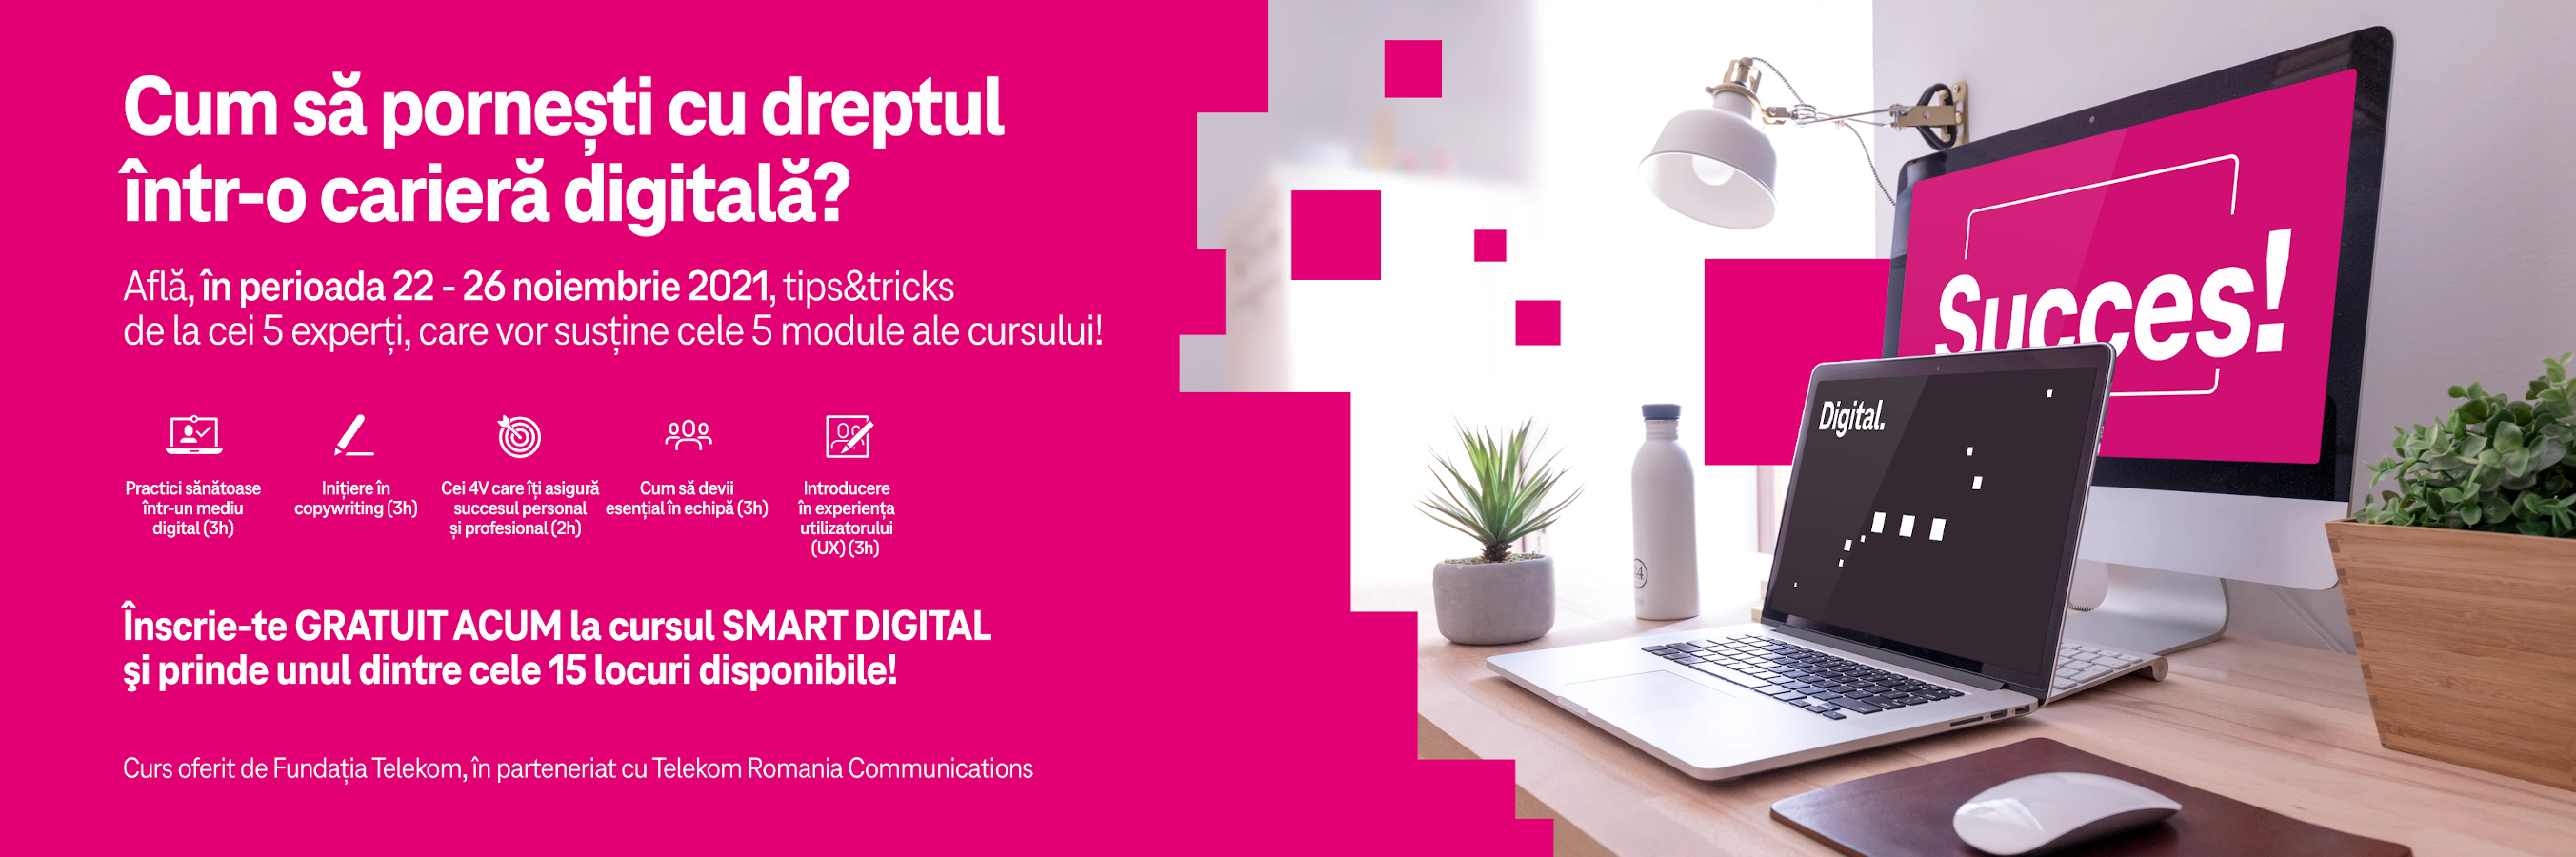 Fundația Telekom și Telekom Romania Communications oferă gratuit cursuri intensive de digitalizare pentru tineri